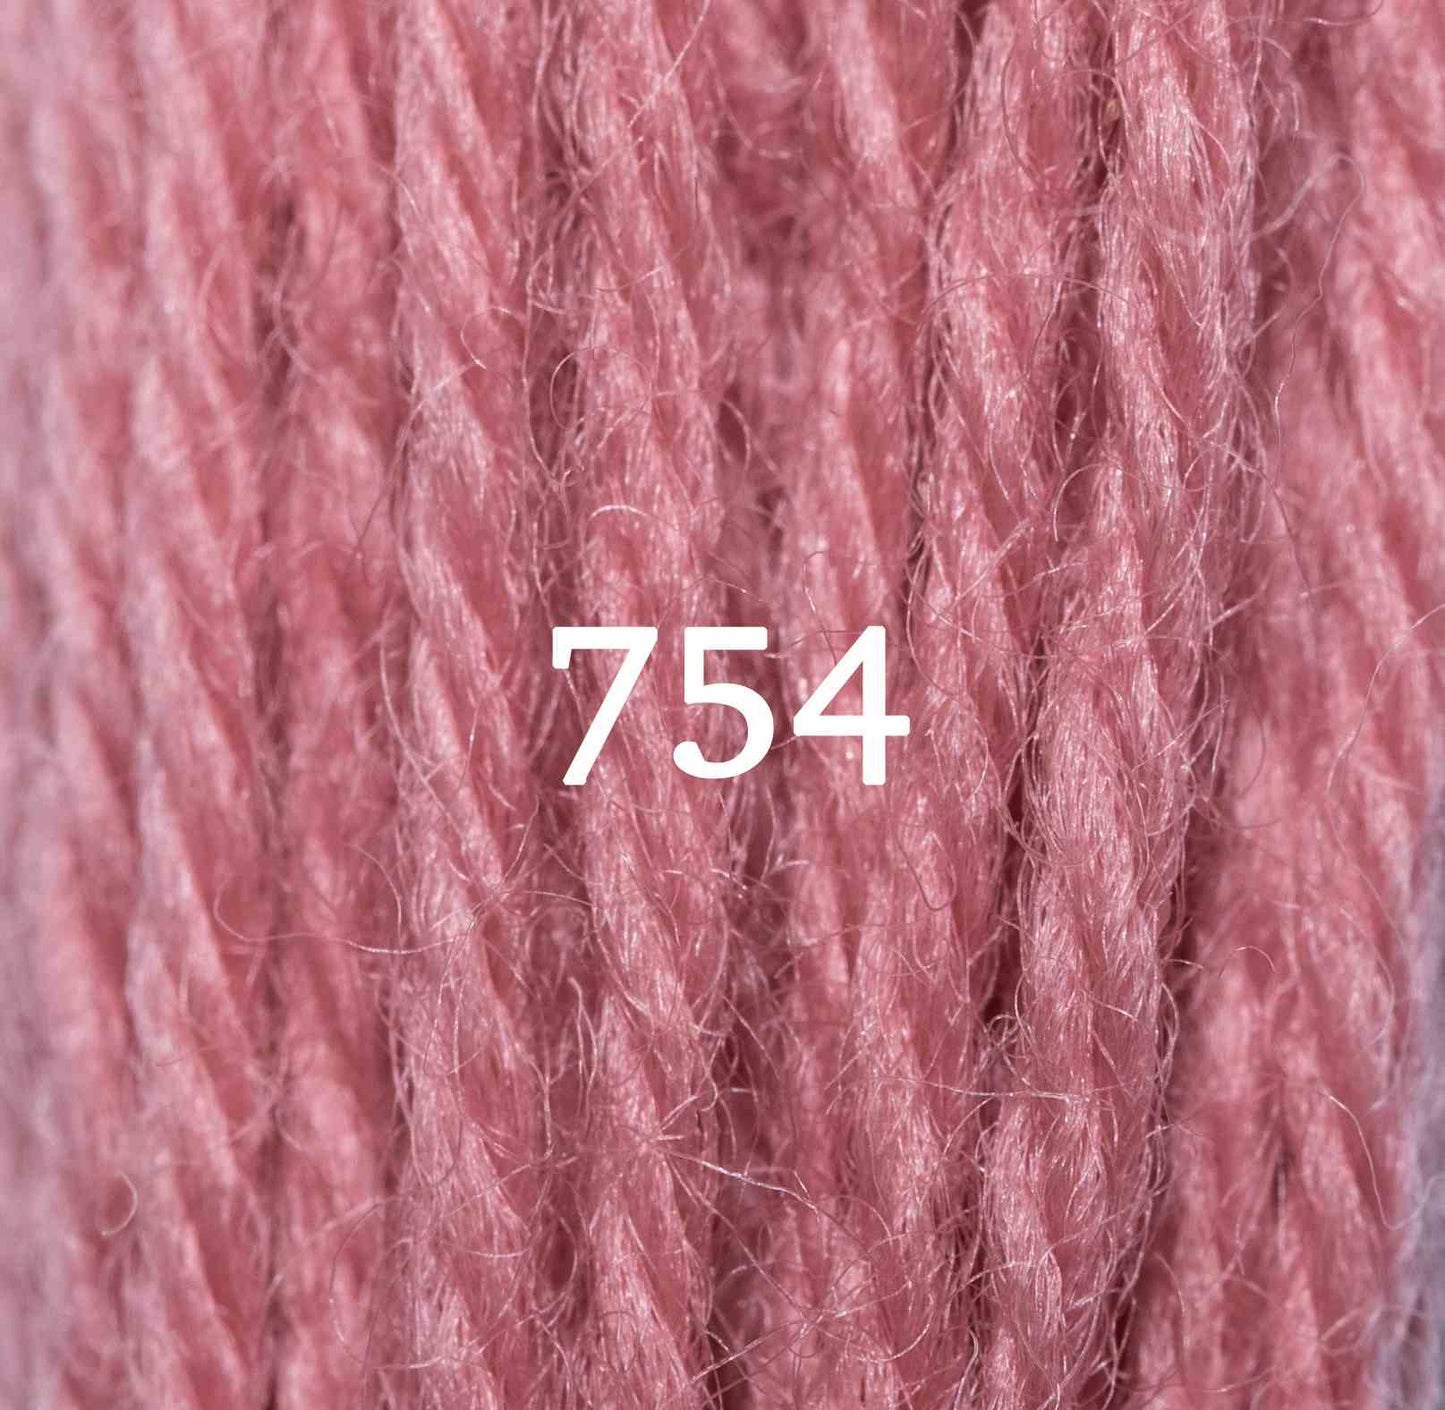 Rose Pink 754